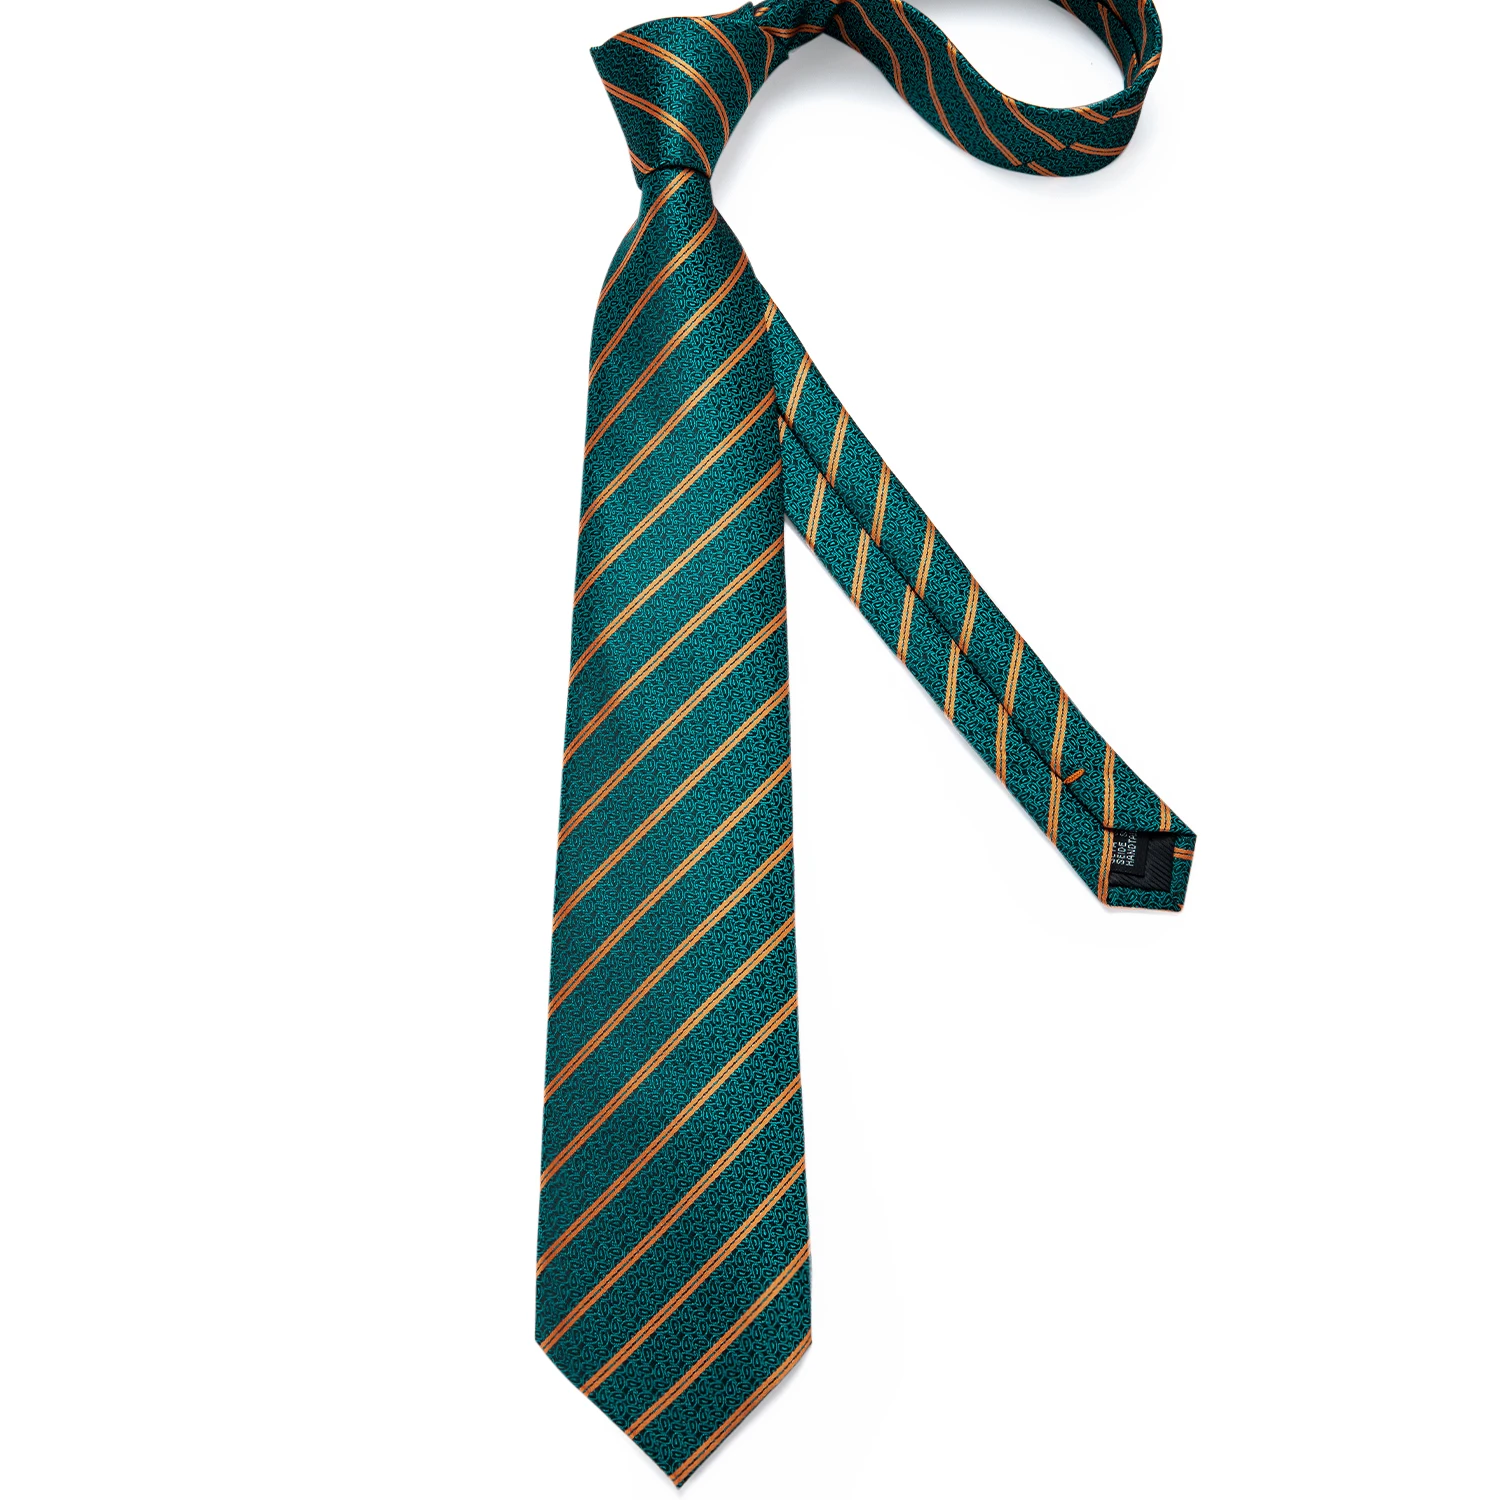 Мужской галстук бирюзовый зеленый золотой полосатый качественный свадебный галстук для мужчин Hanky запонки шелковый галстук набор DiBanGu дизайн бизнес MJ-7315